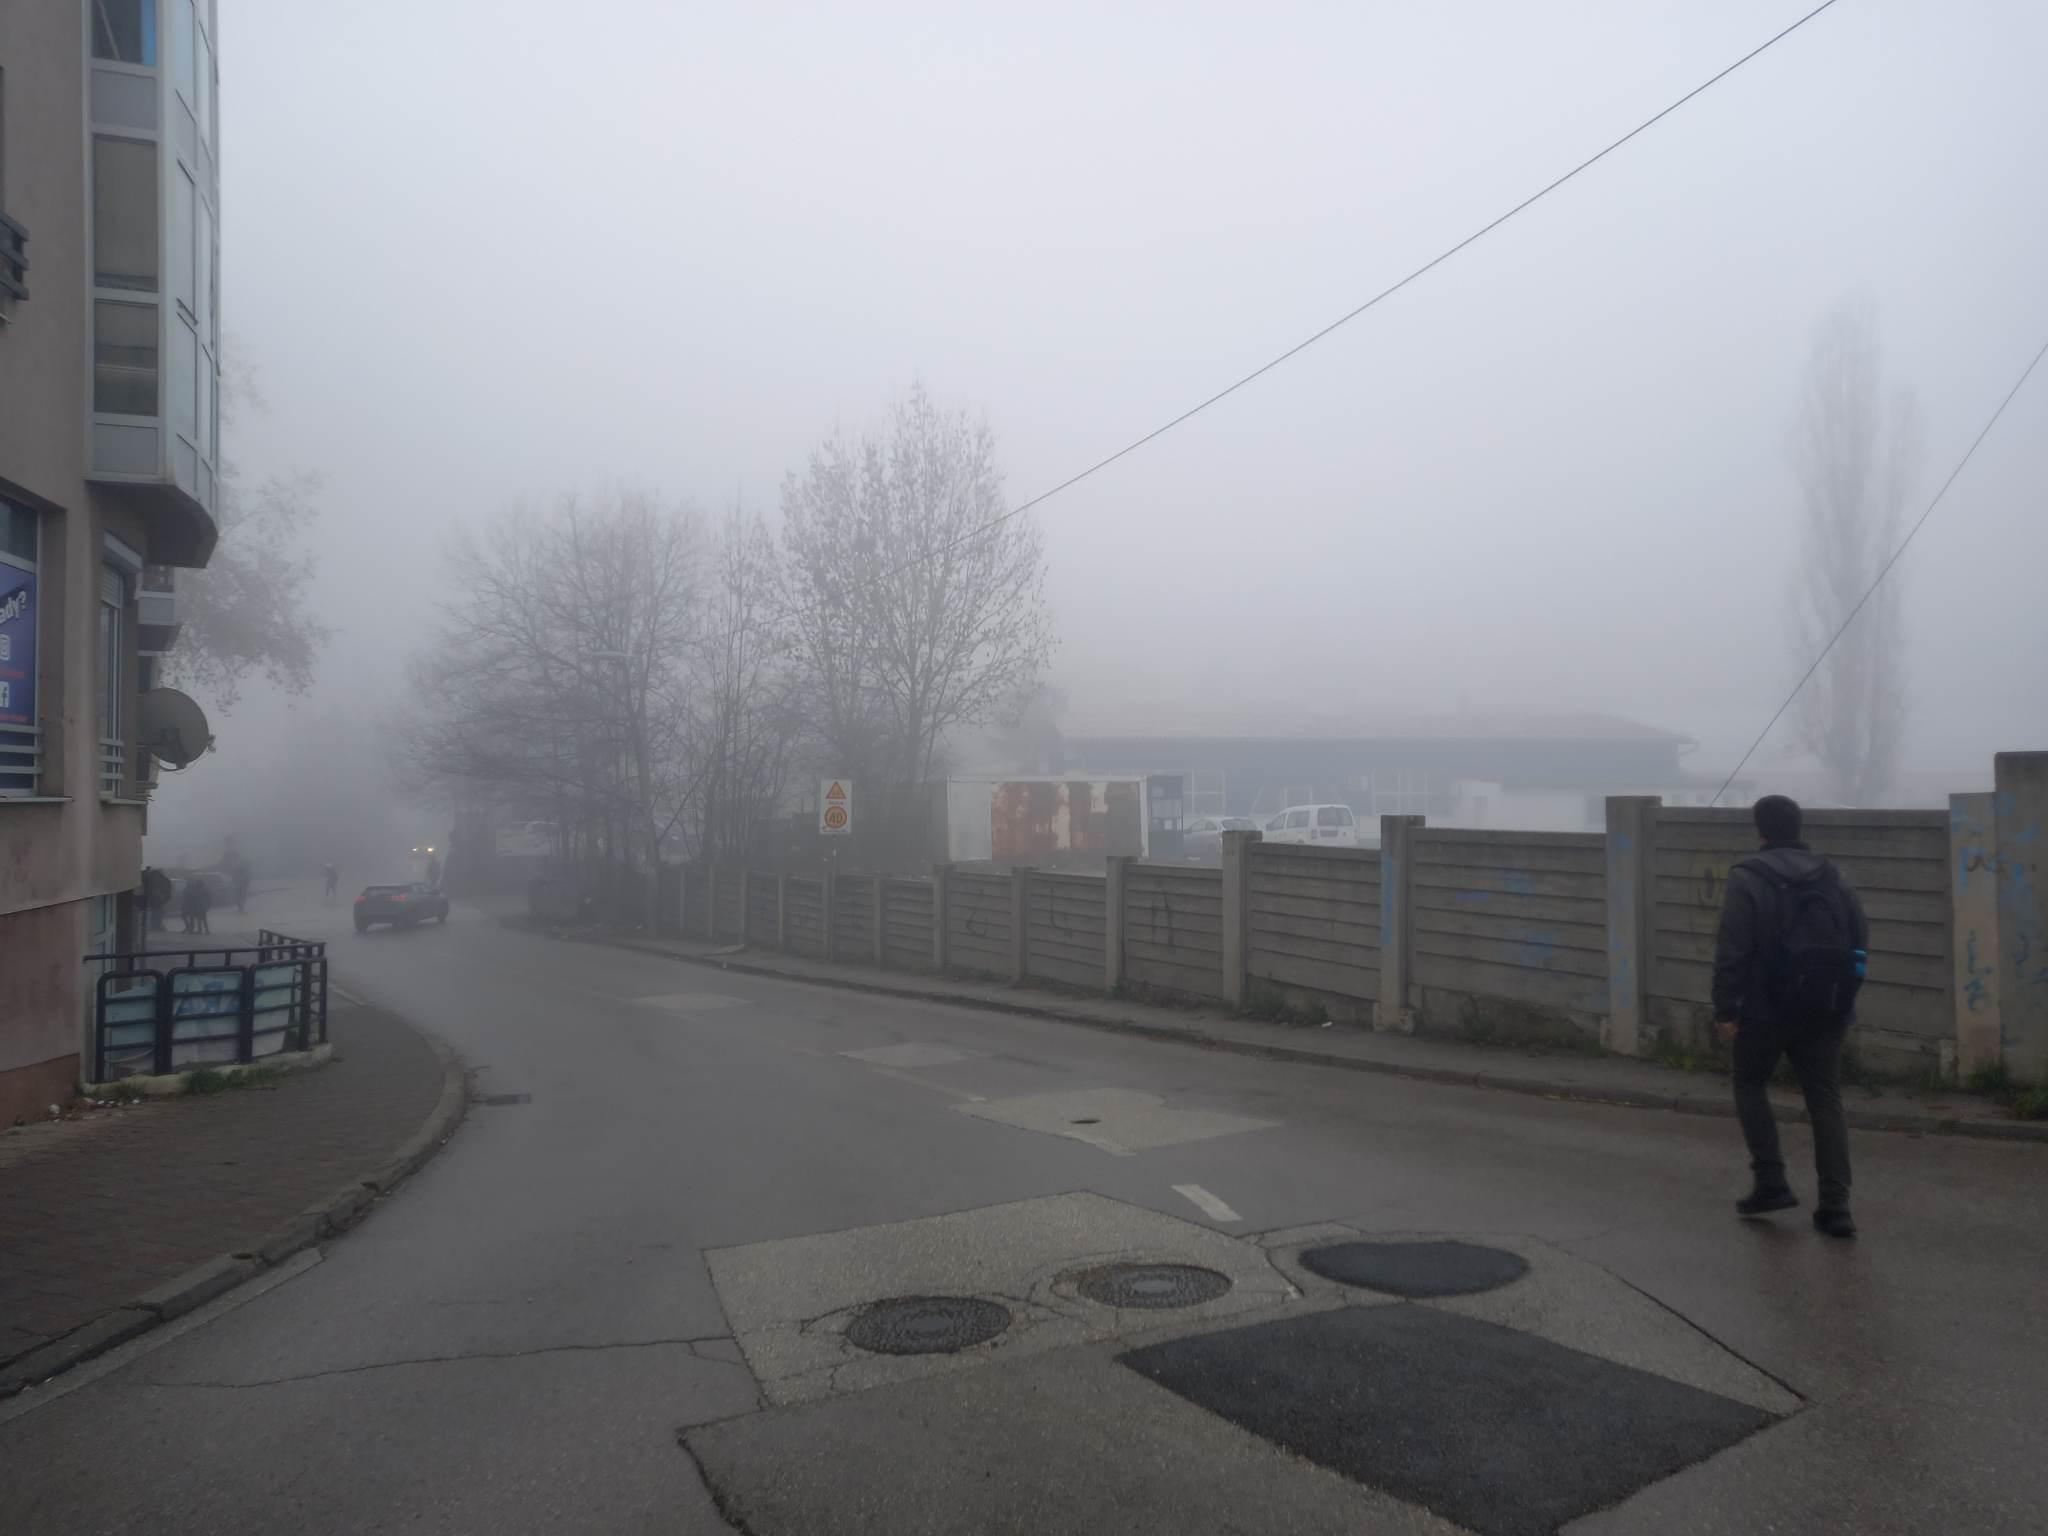 Sarajlije se guše u smogu - Avaz